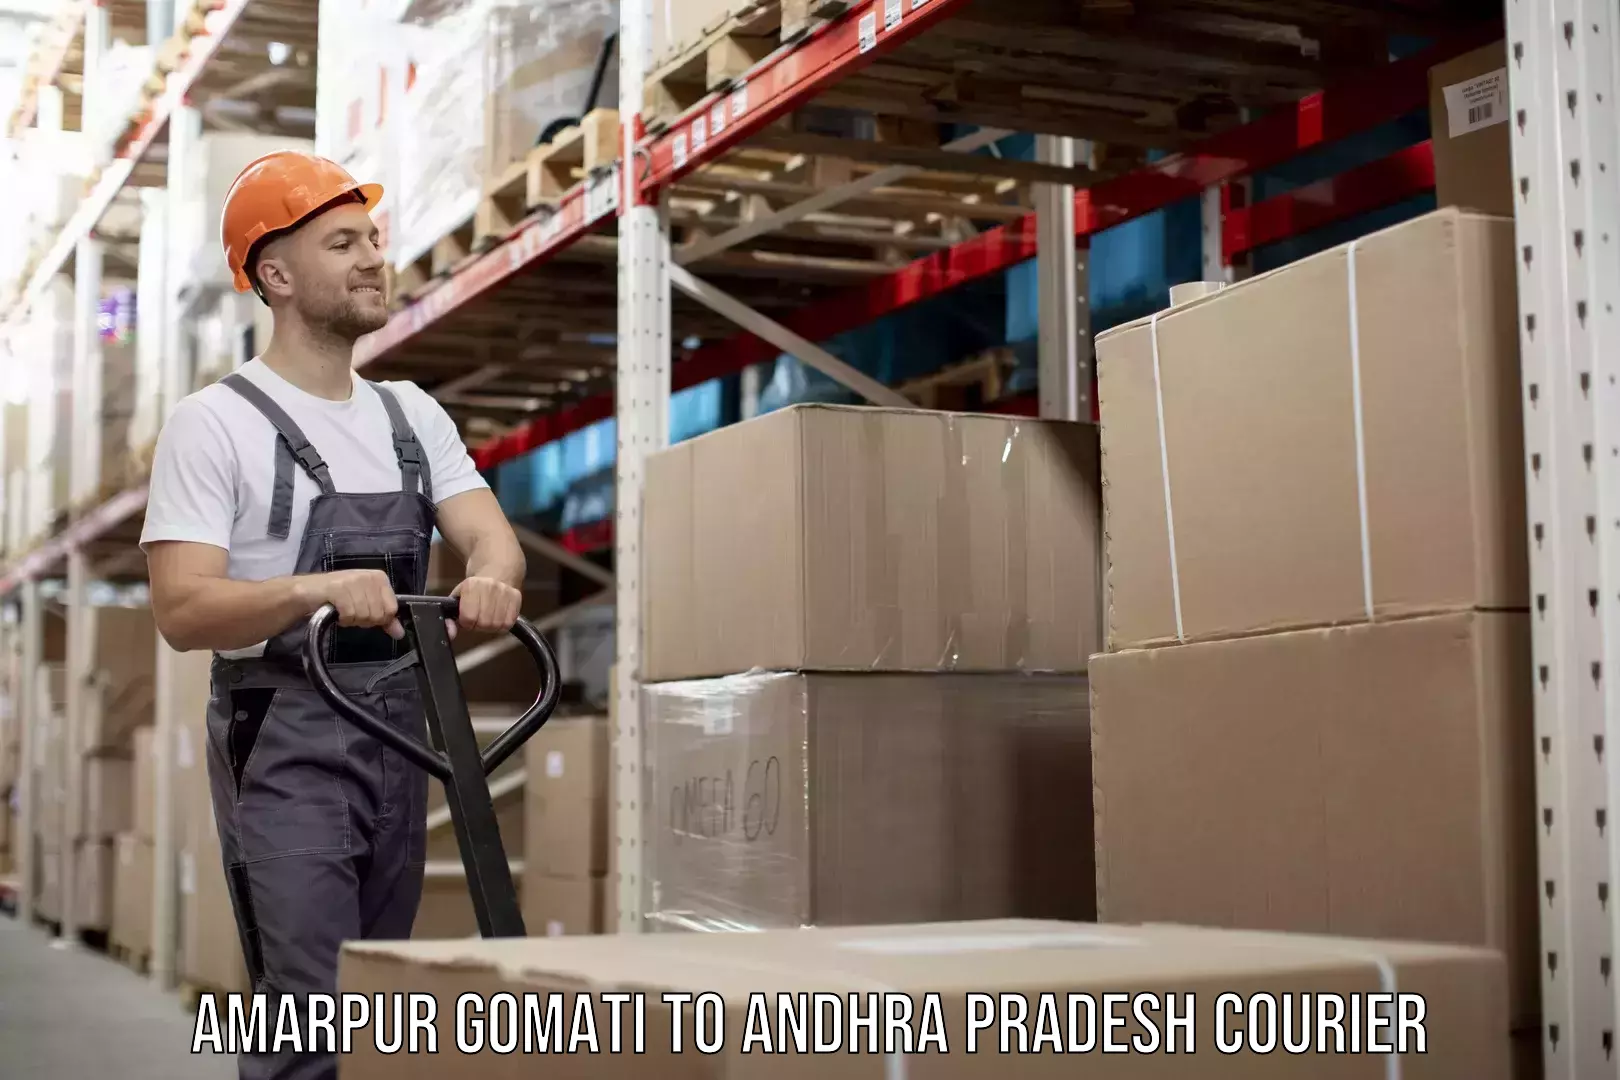 Efficient parcel service Amarpur Gomati to Andhra Pradesh